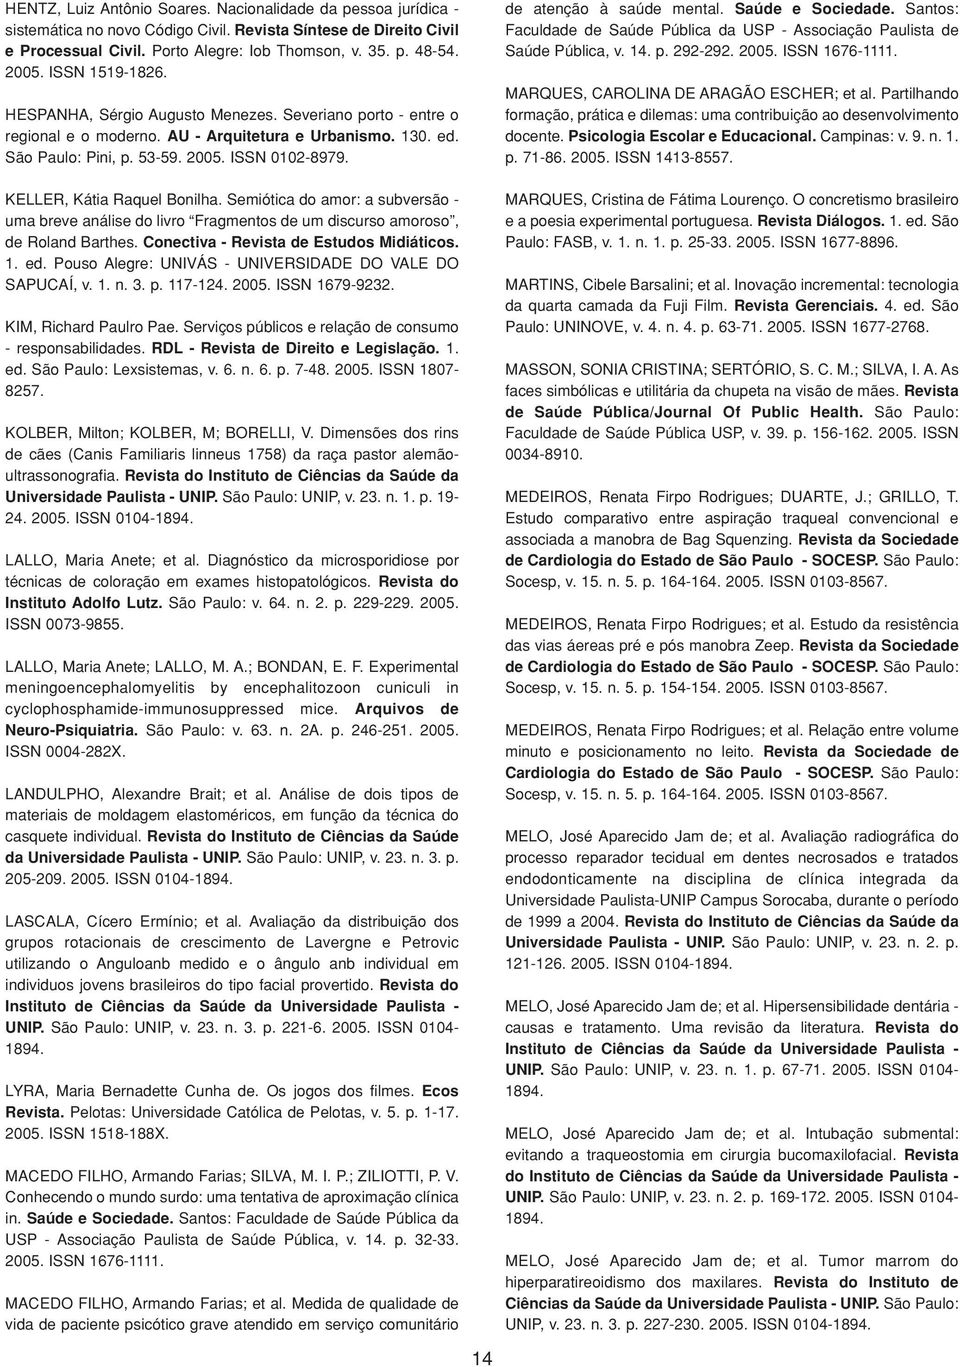 de atenção à saúde mental. Saúde e Sociedade. Santos: Faculdade de Saúde Pública da USP - Associação Paulista de Saúde Pública, v. 14. p. 292-292. ISSN 1676-1111.